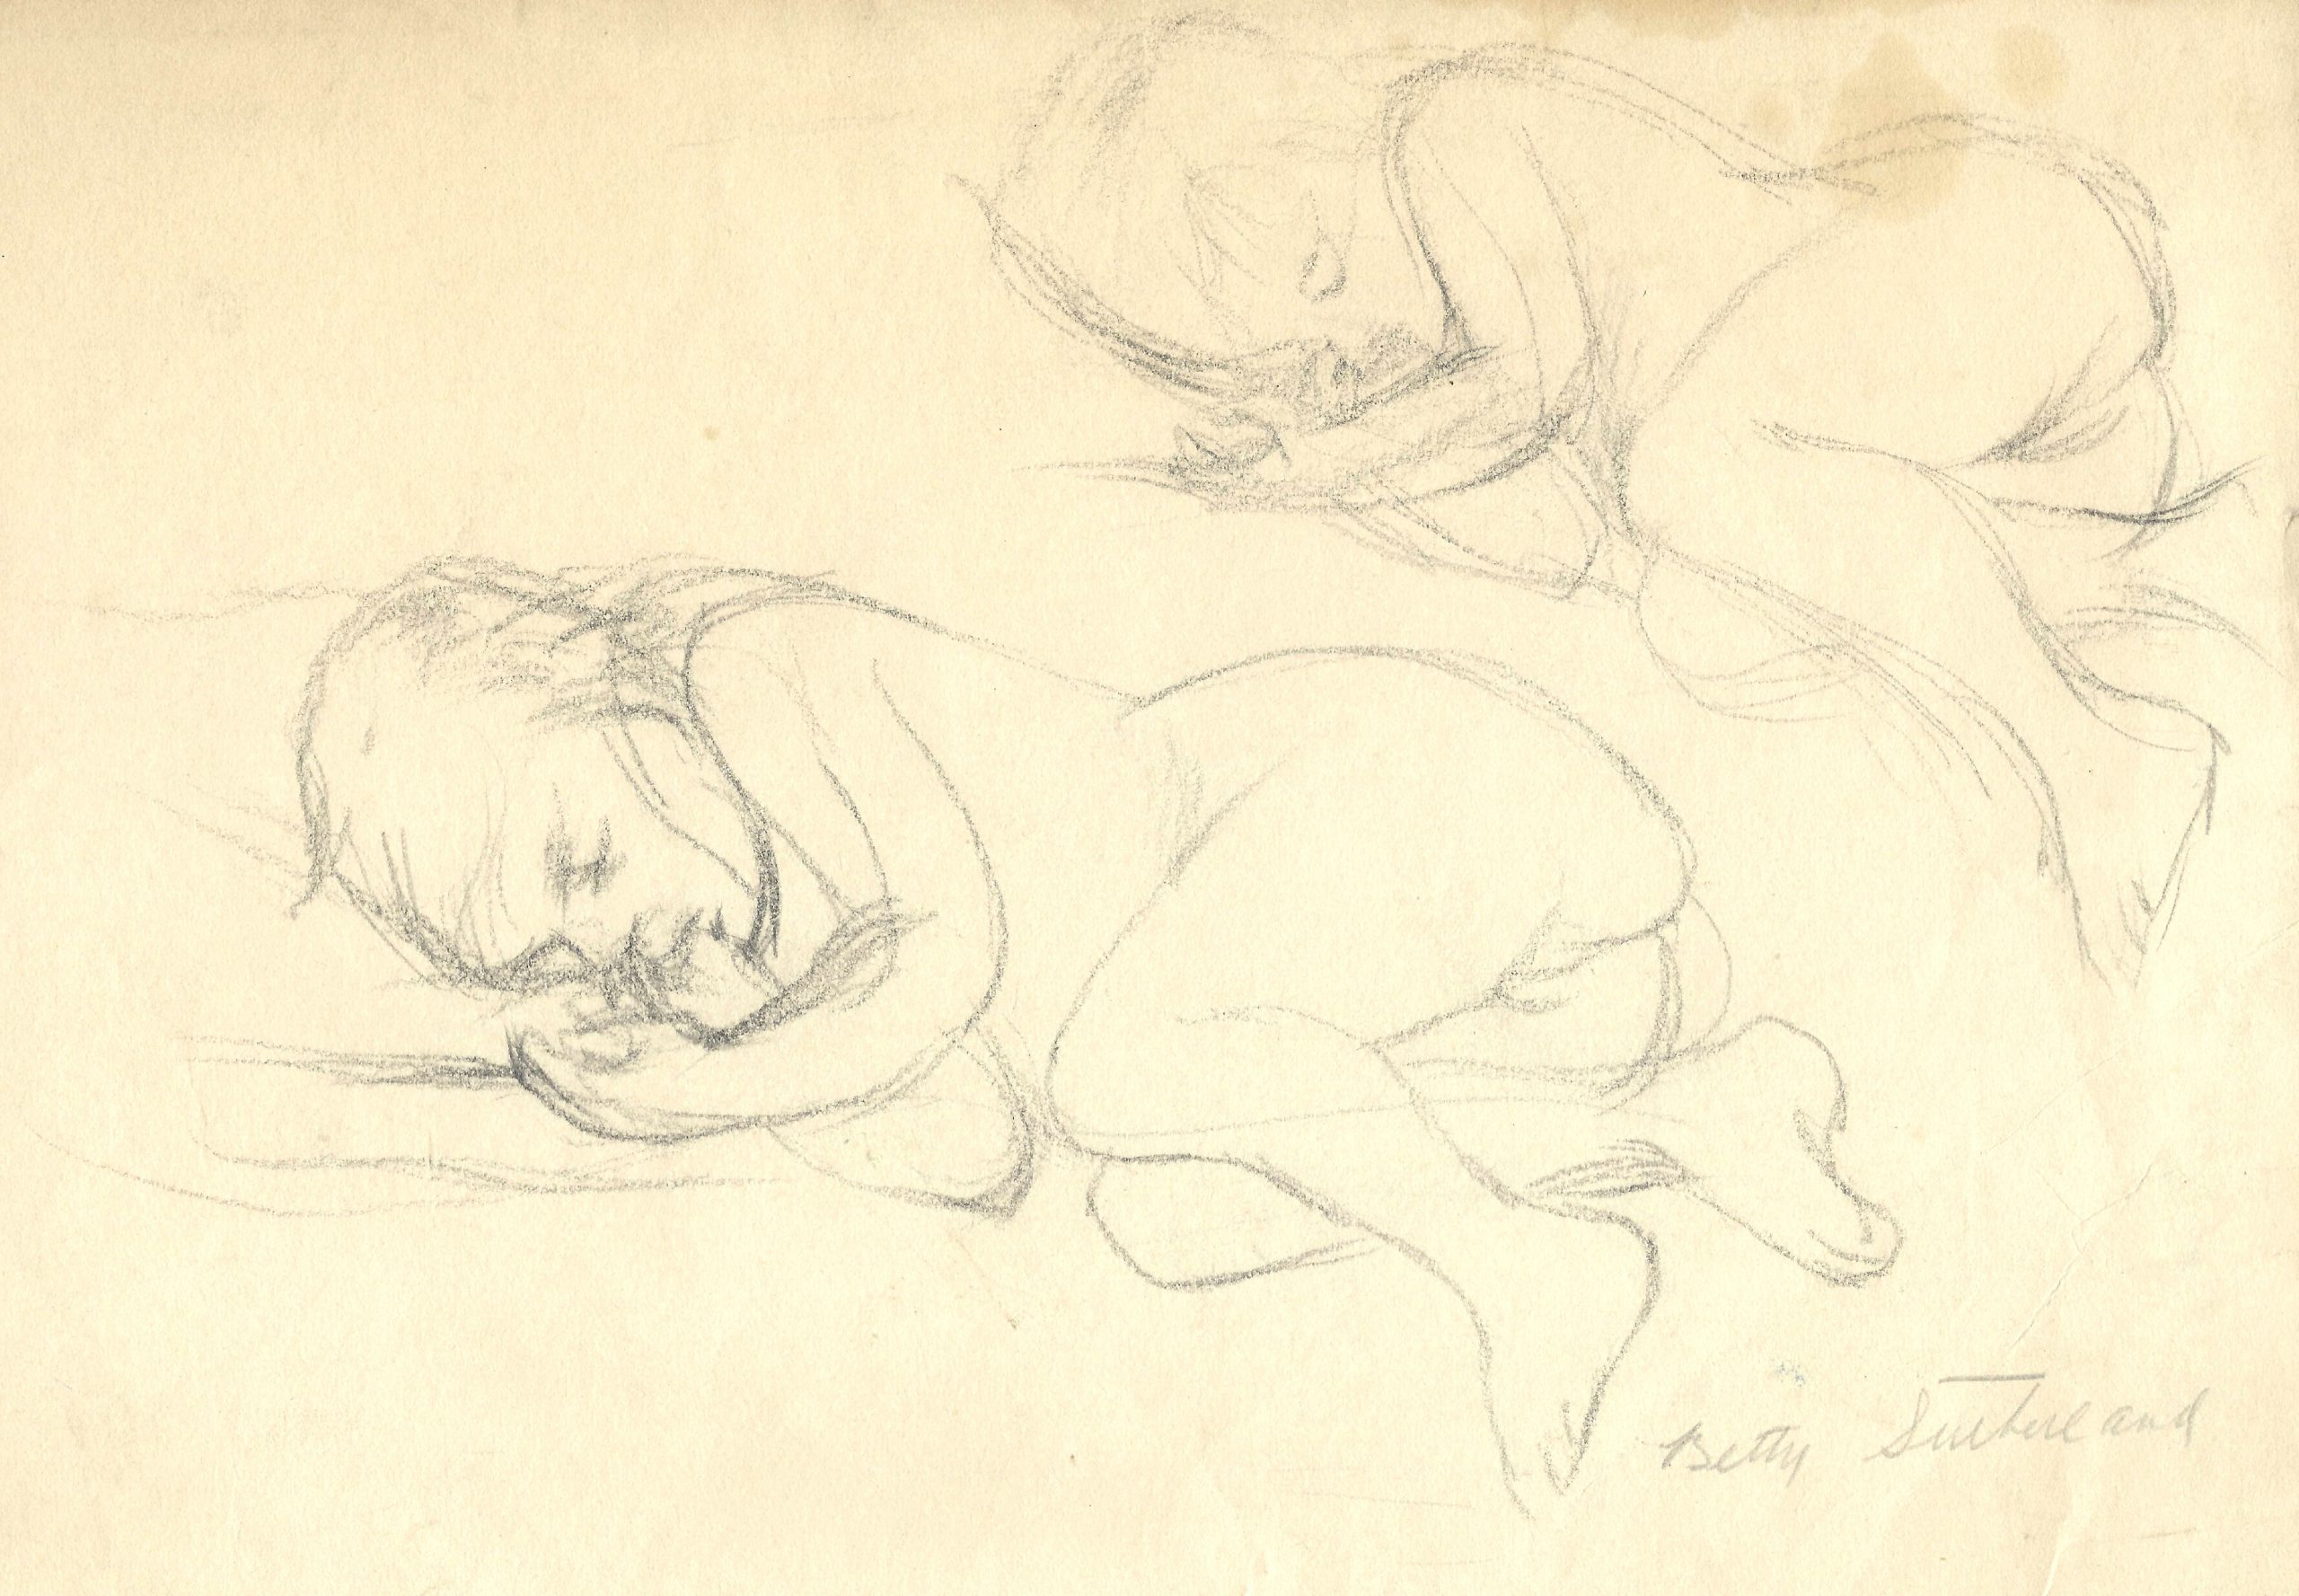 sleeping child sketches by Betty Sutherland aka Boschka Layton